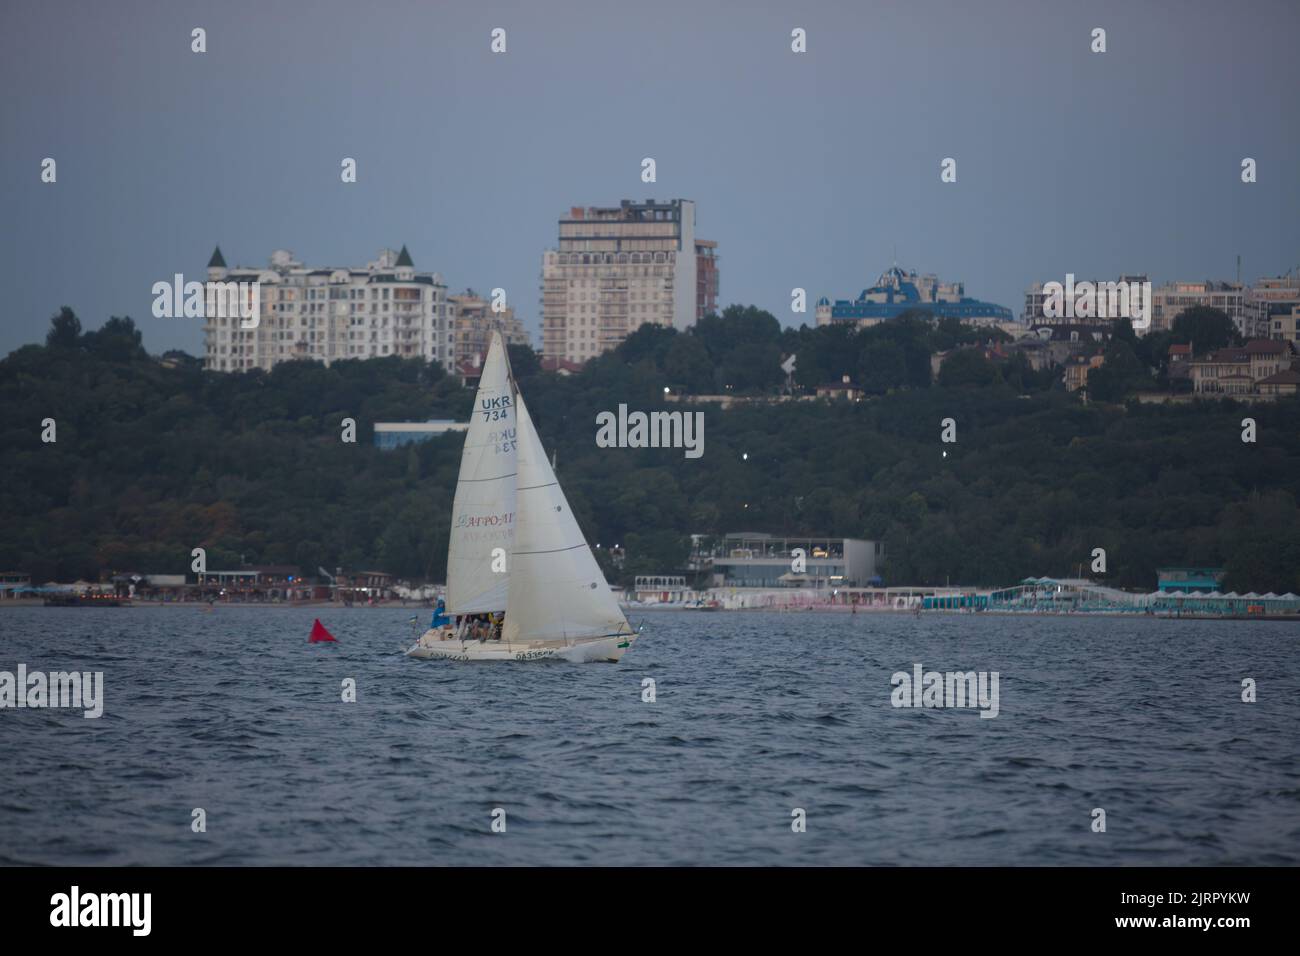 Segelyacht-Regatta. Segelboote unter Segel im Rennen. Yachting. Luxusyachten. Stockfoto